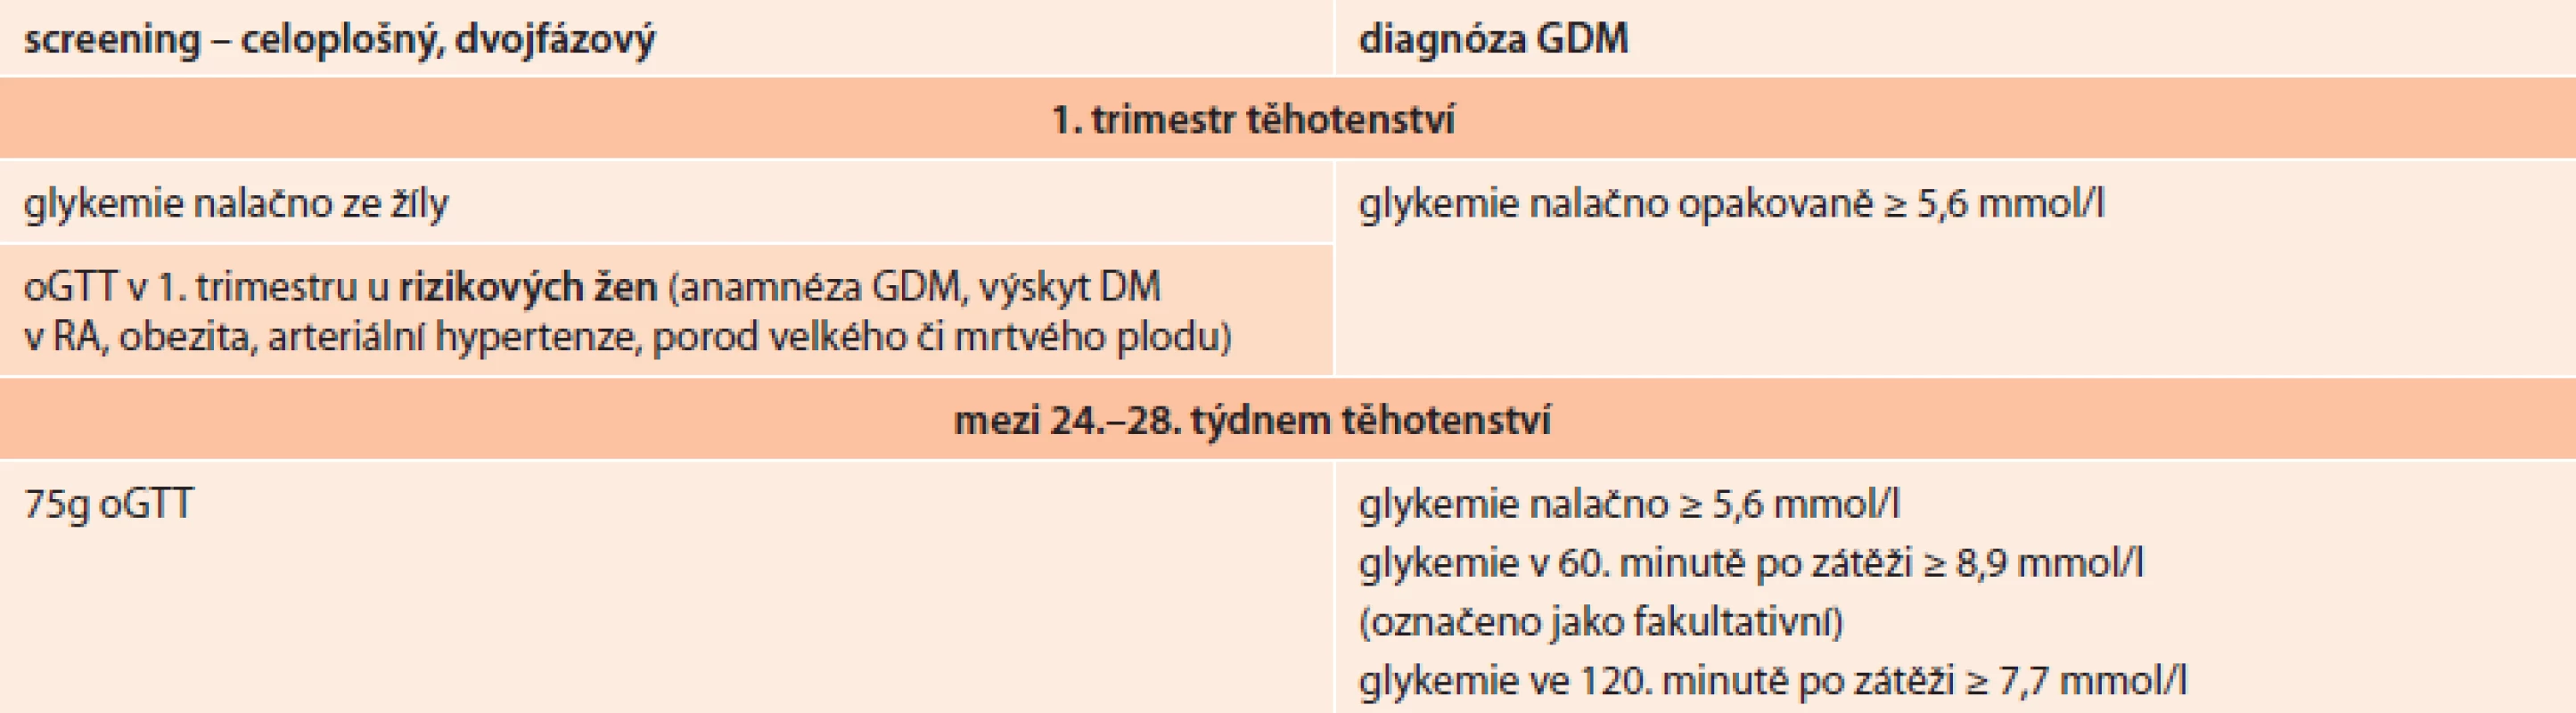 Screening GDM v ČR dle doporučeného postupu z roku 2008 vzniklého po dohodě ČDS ČLS JEP a ČGPS ČLS JEP